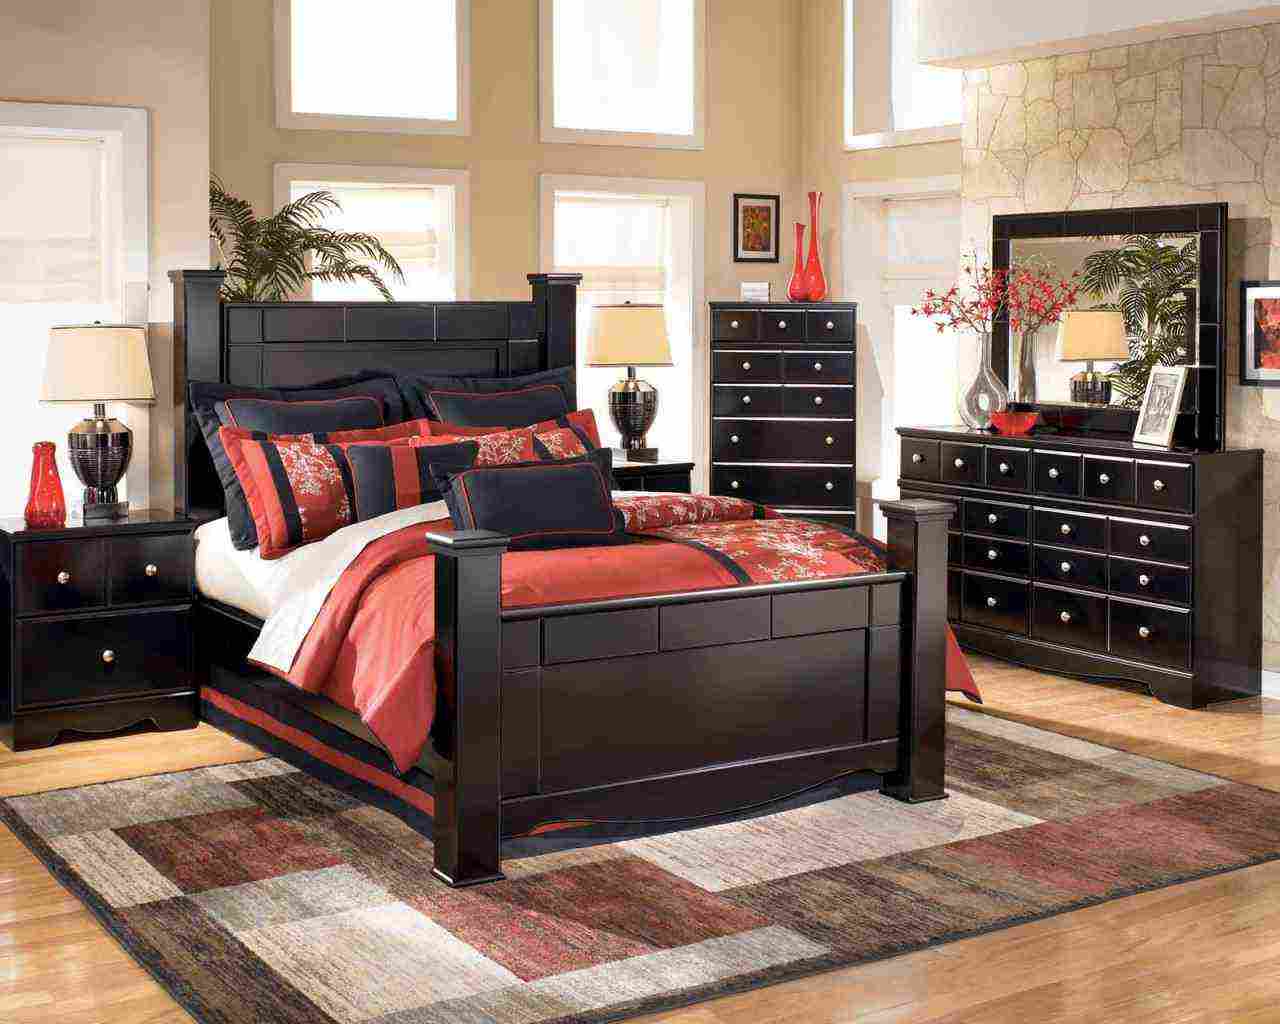 Black Wood Bedroom Furniture - Decor IdeasDecor Ideas